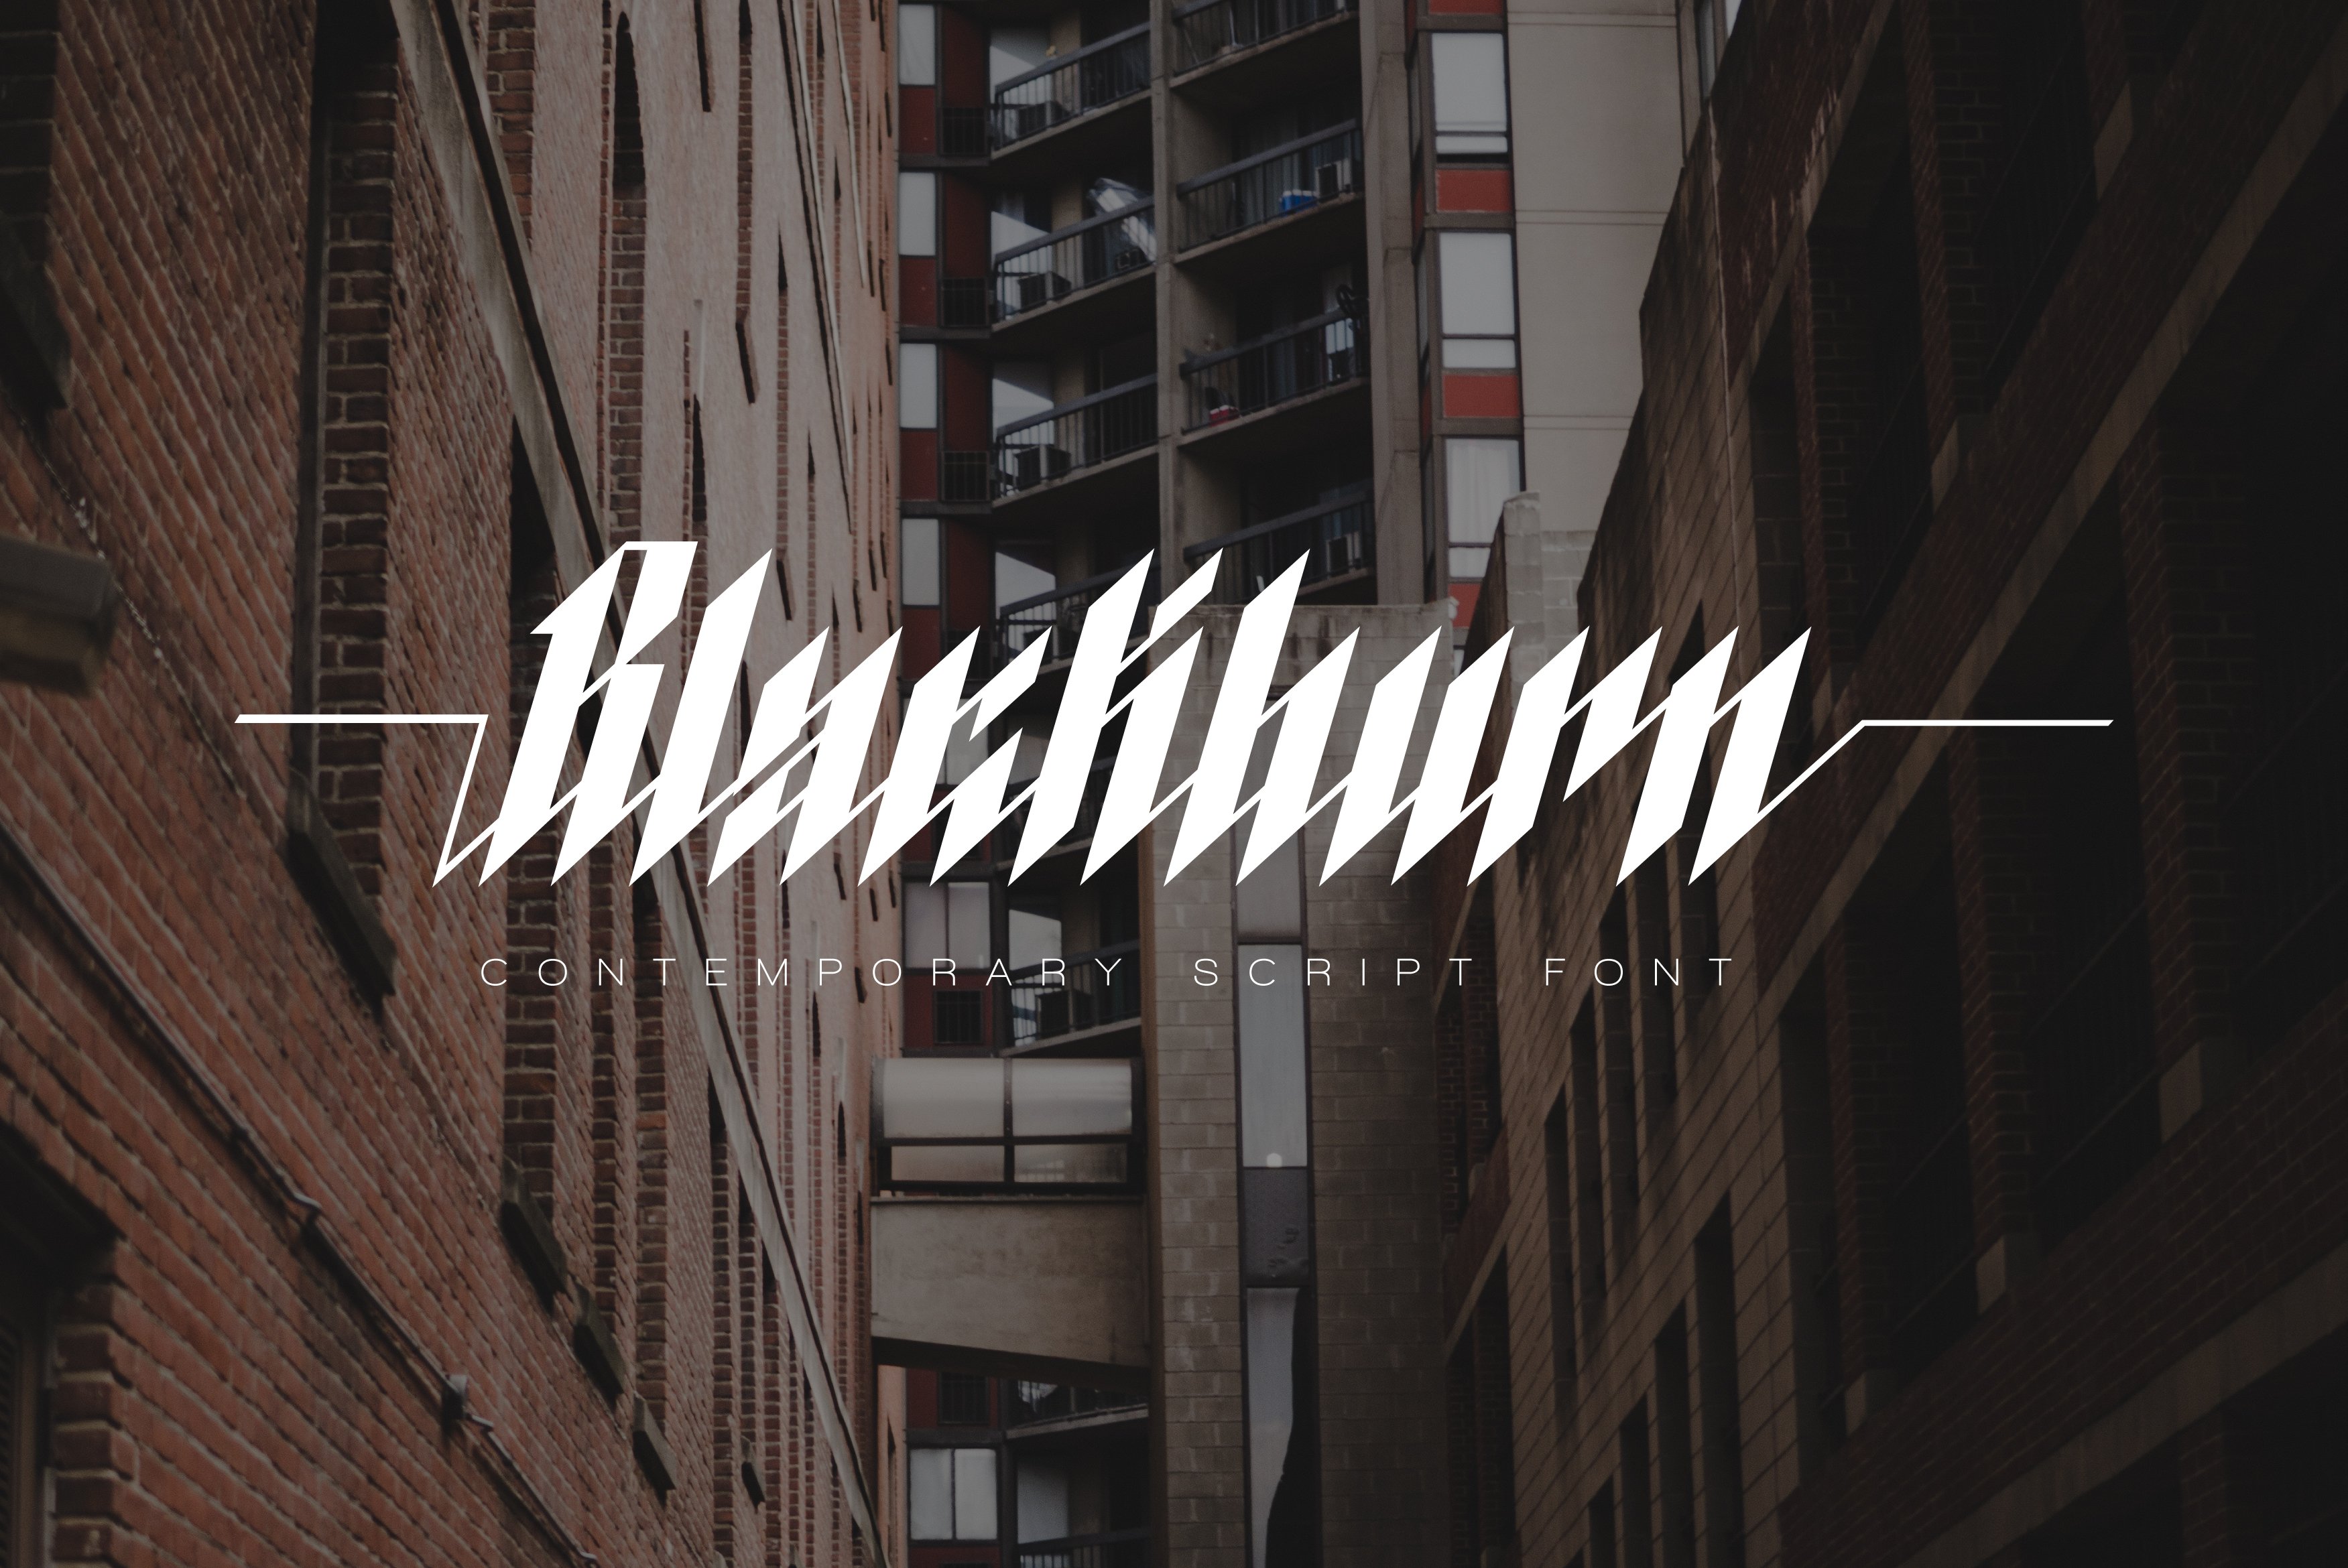 Blackburn - Modern Blackletter Font cover image.